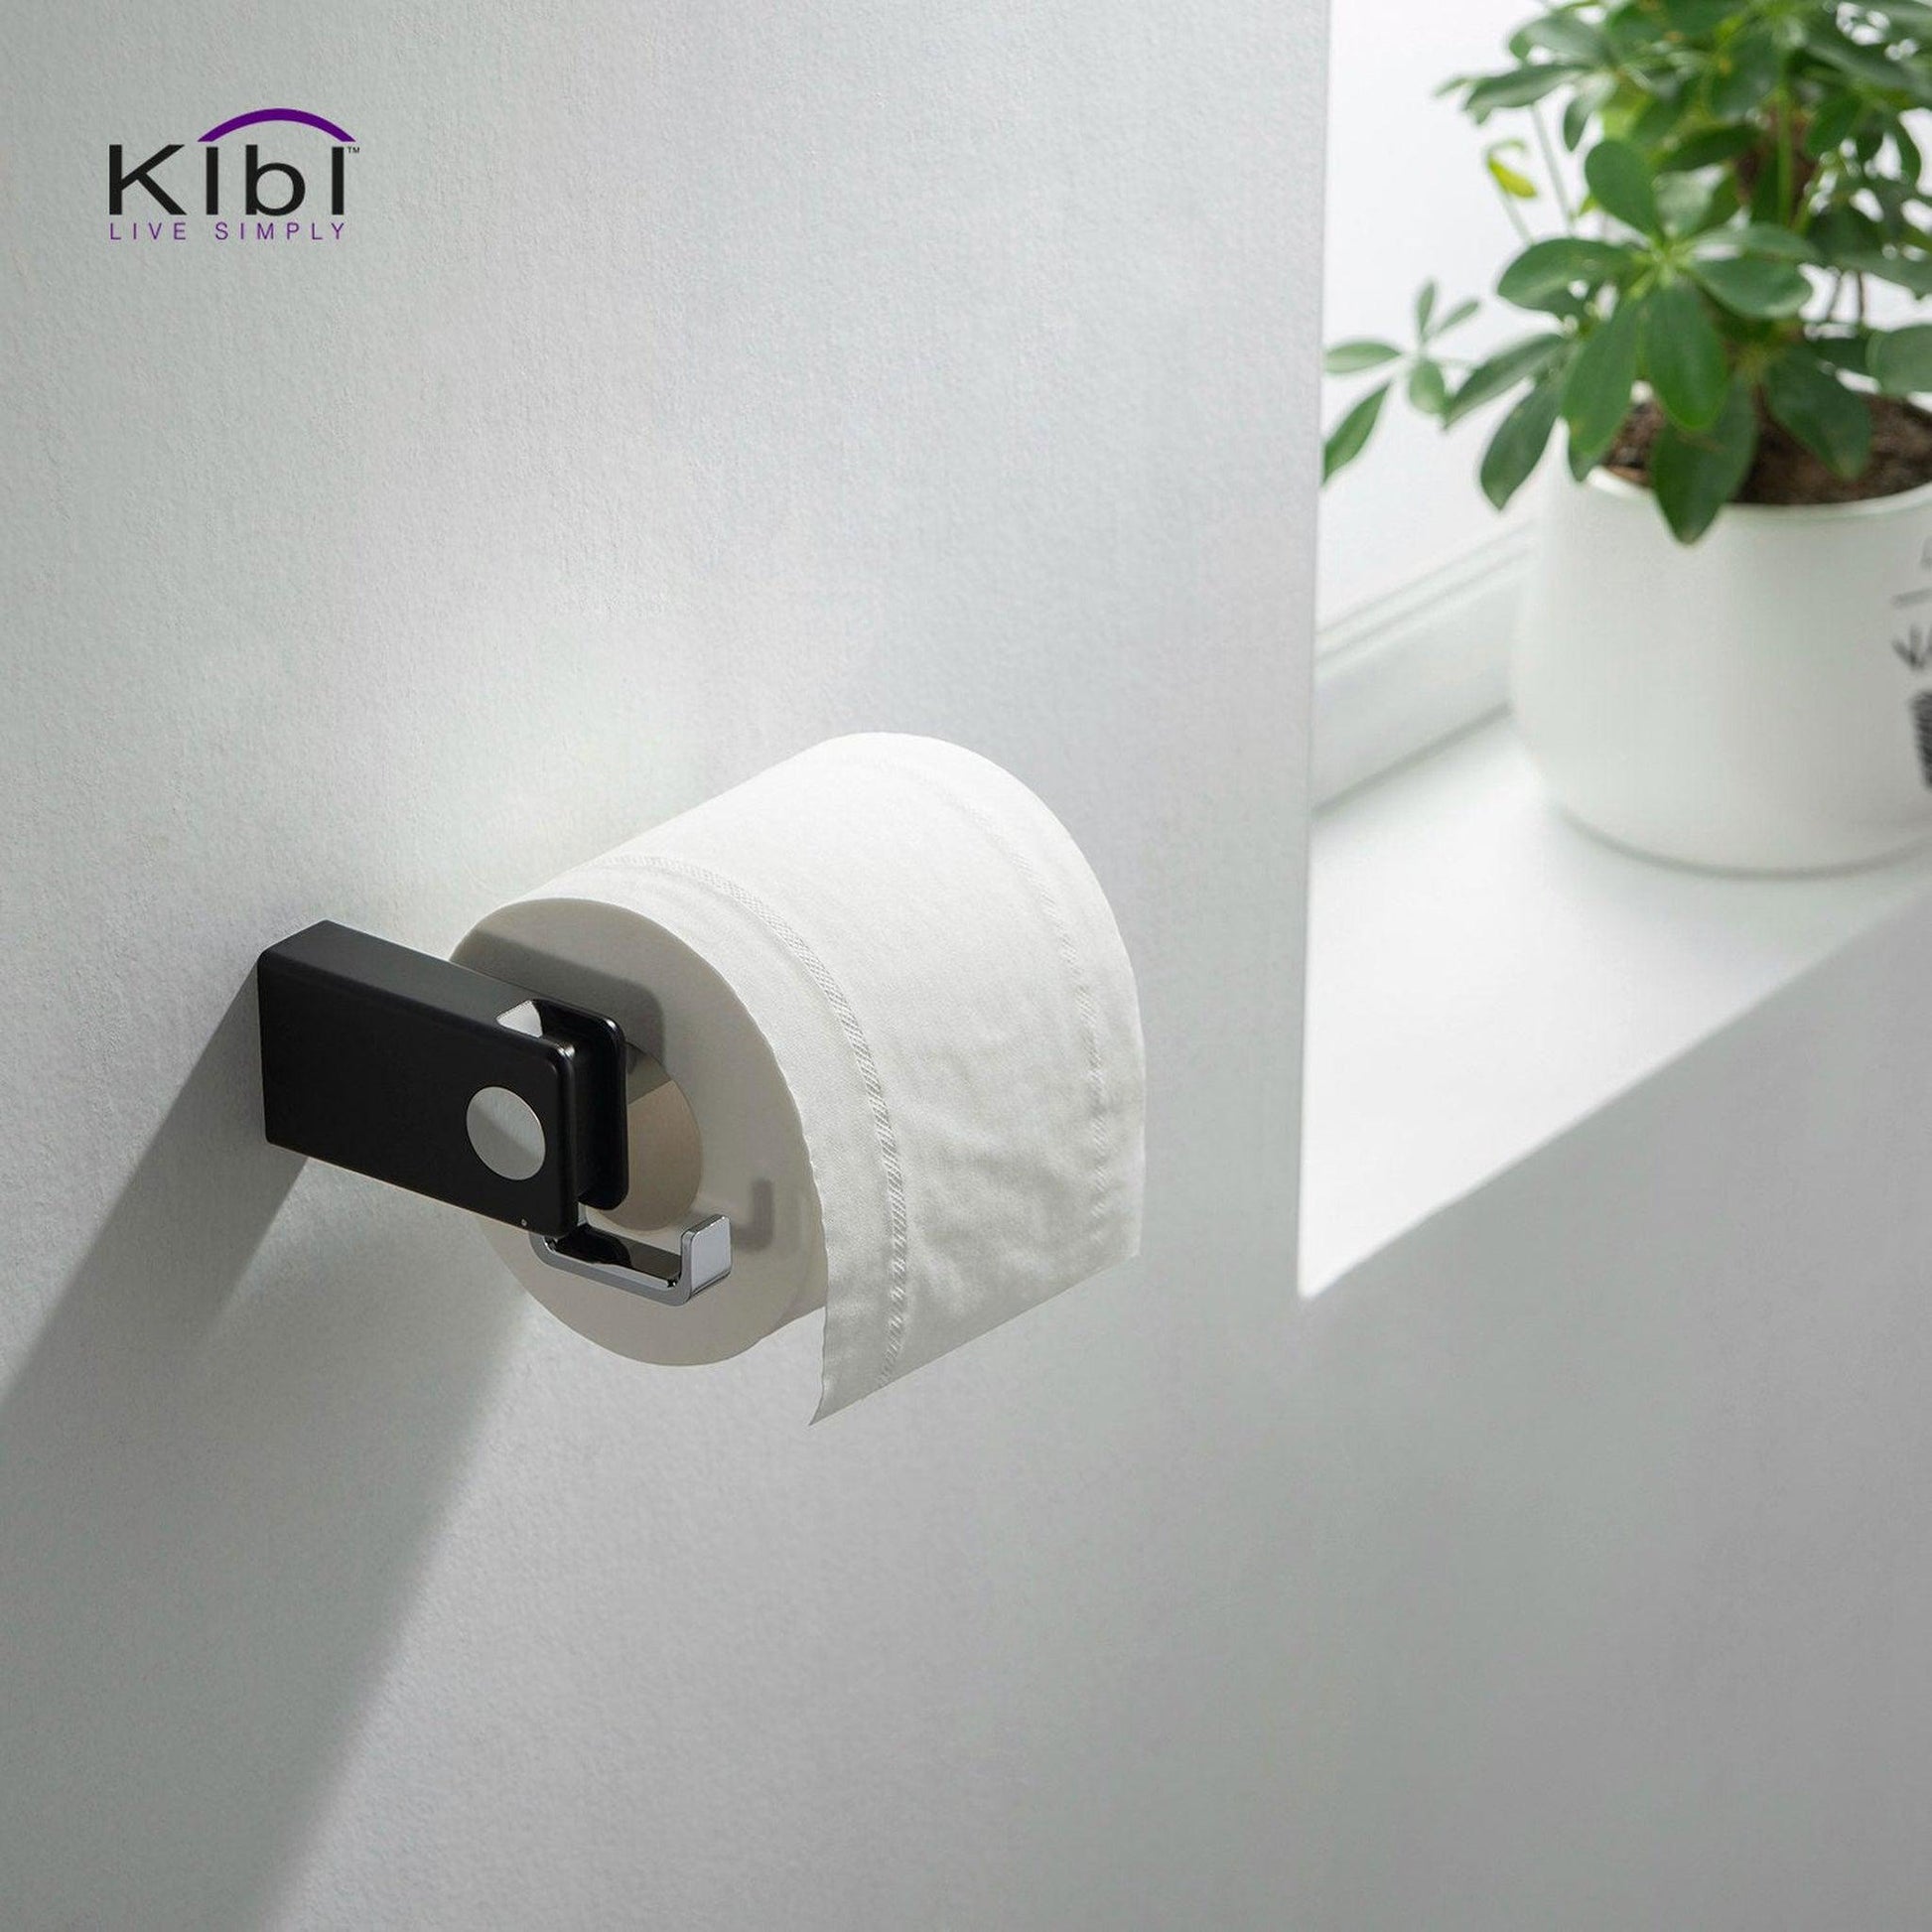 KIBI Artis Bathroom Tissue Holder With Hook in Chrome Black Finish